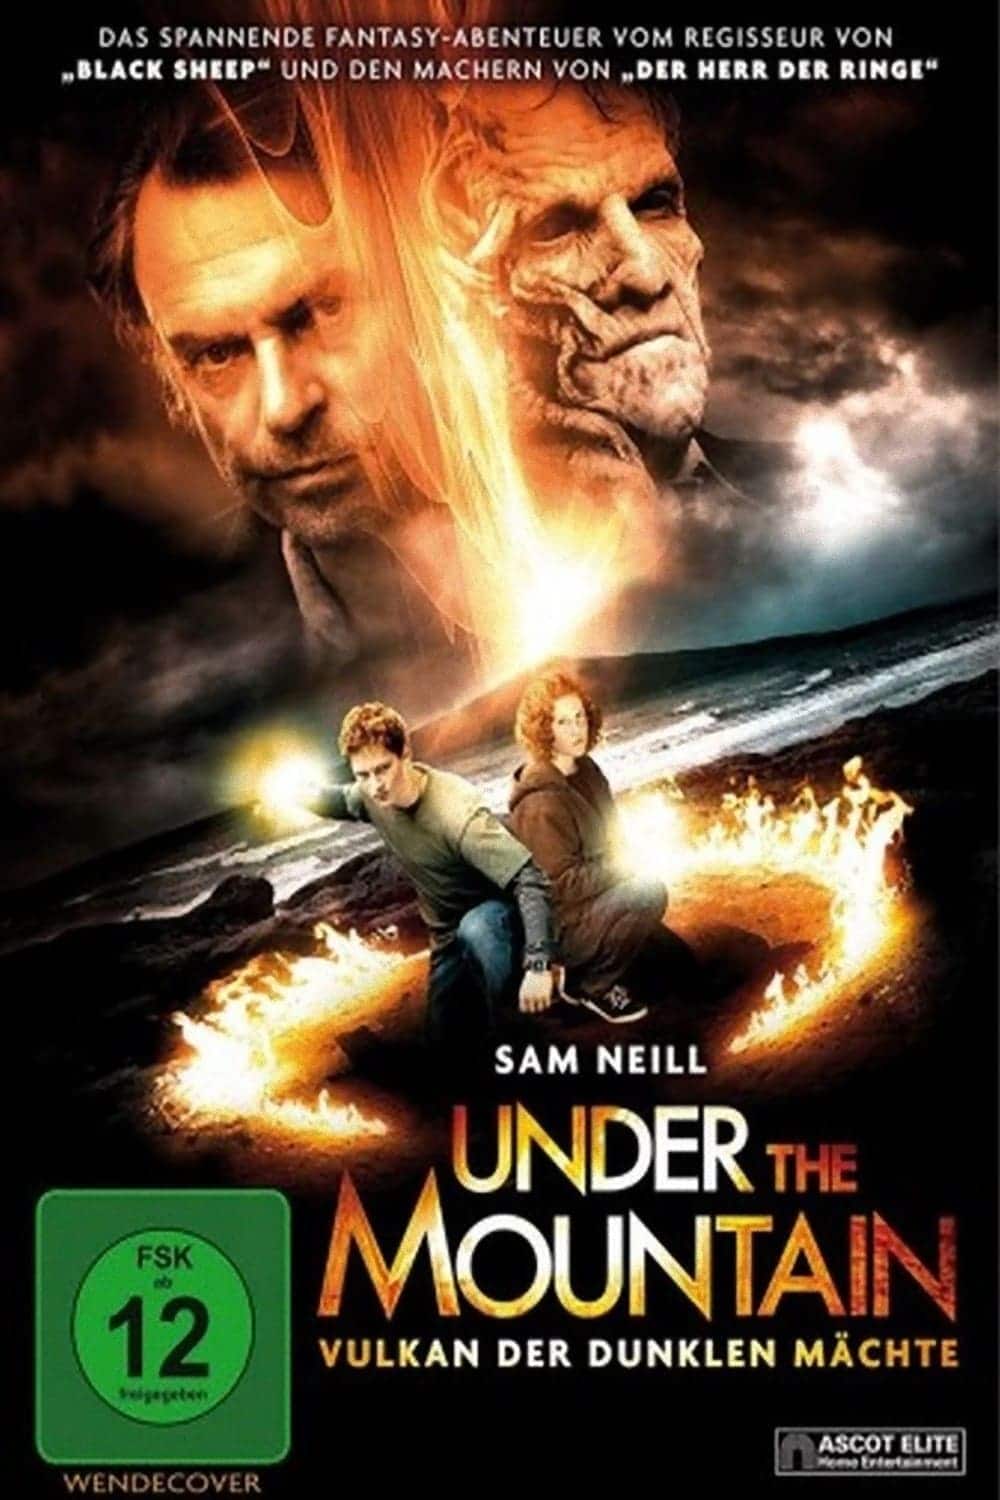 Plakat von "Under the Mountain"